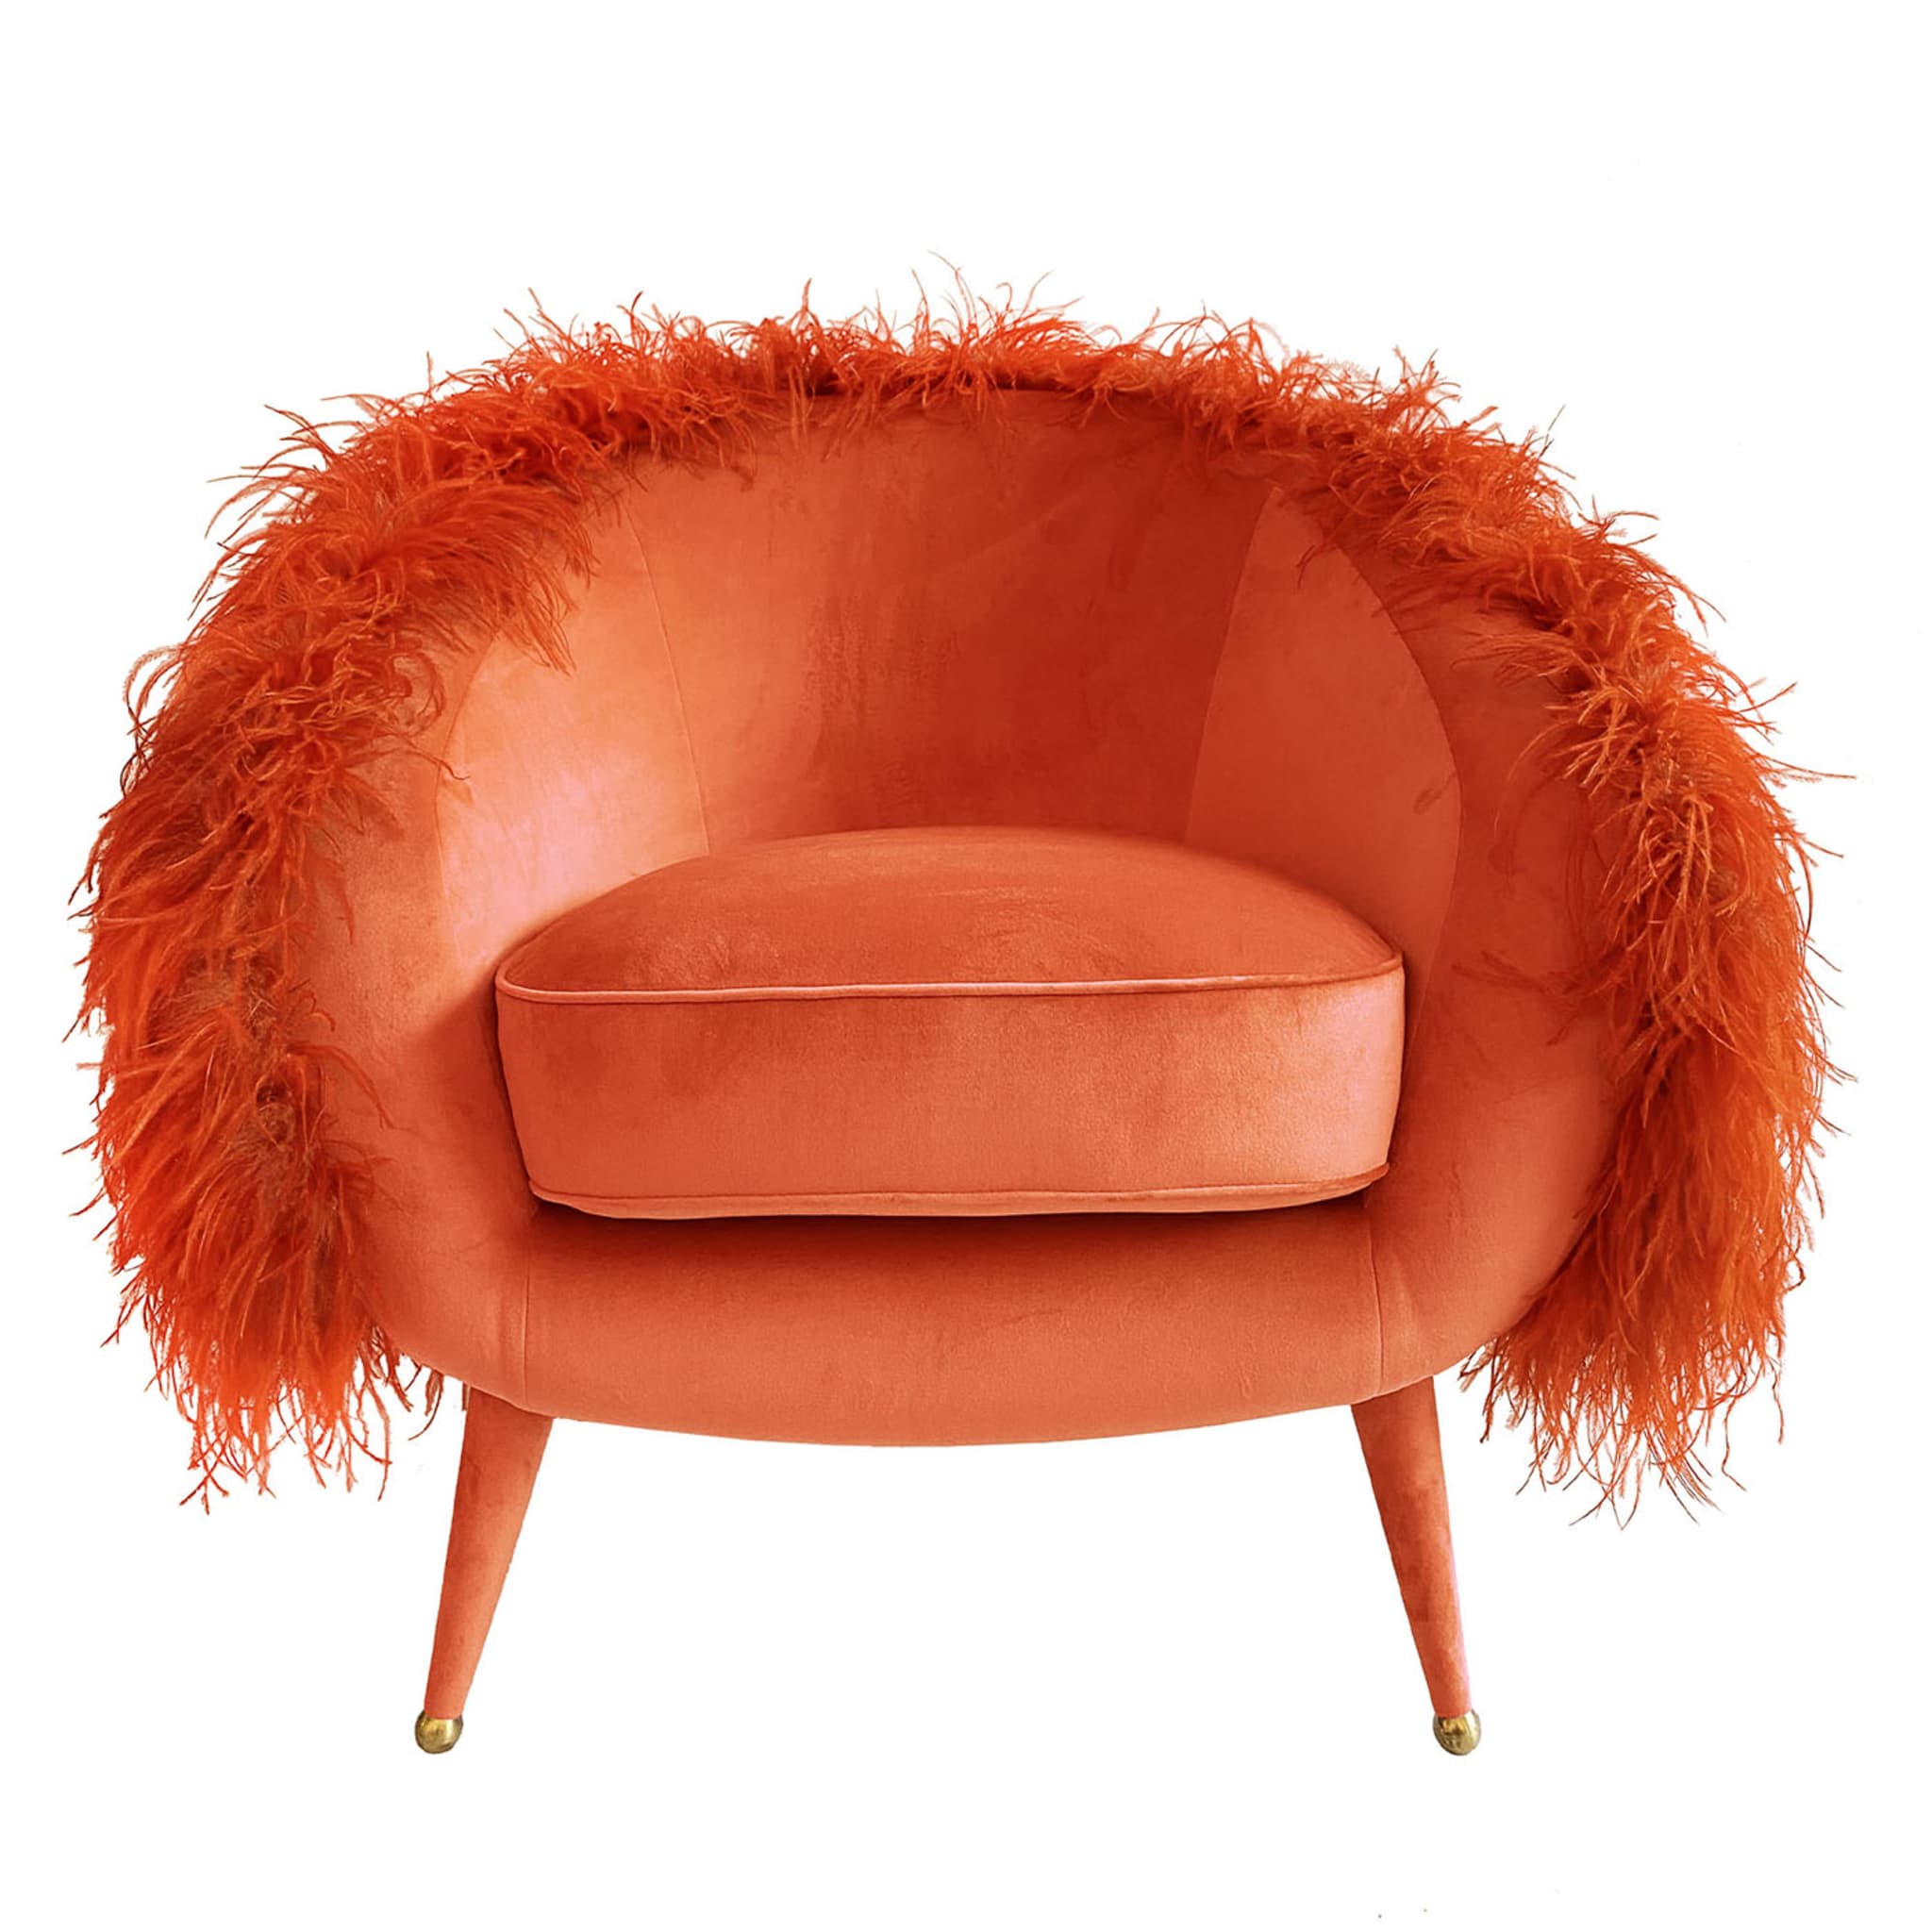 Dream Orange Armchair - Main view